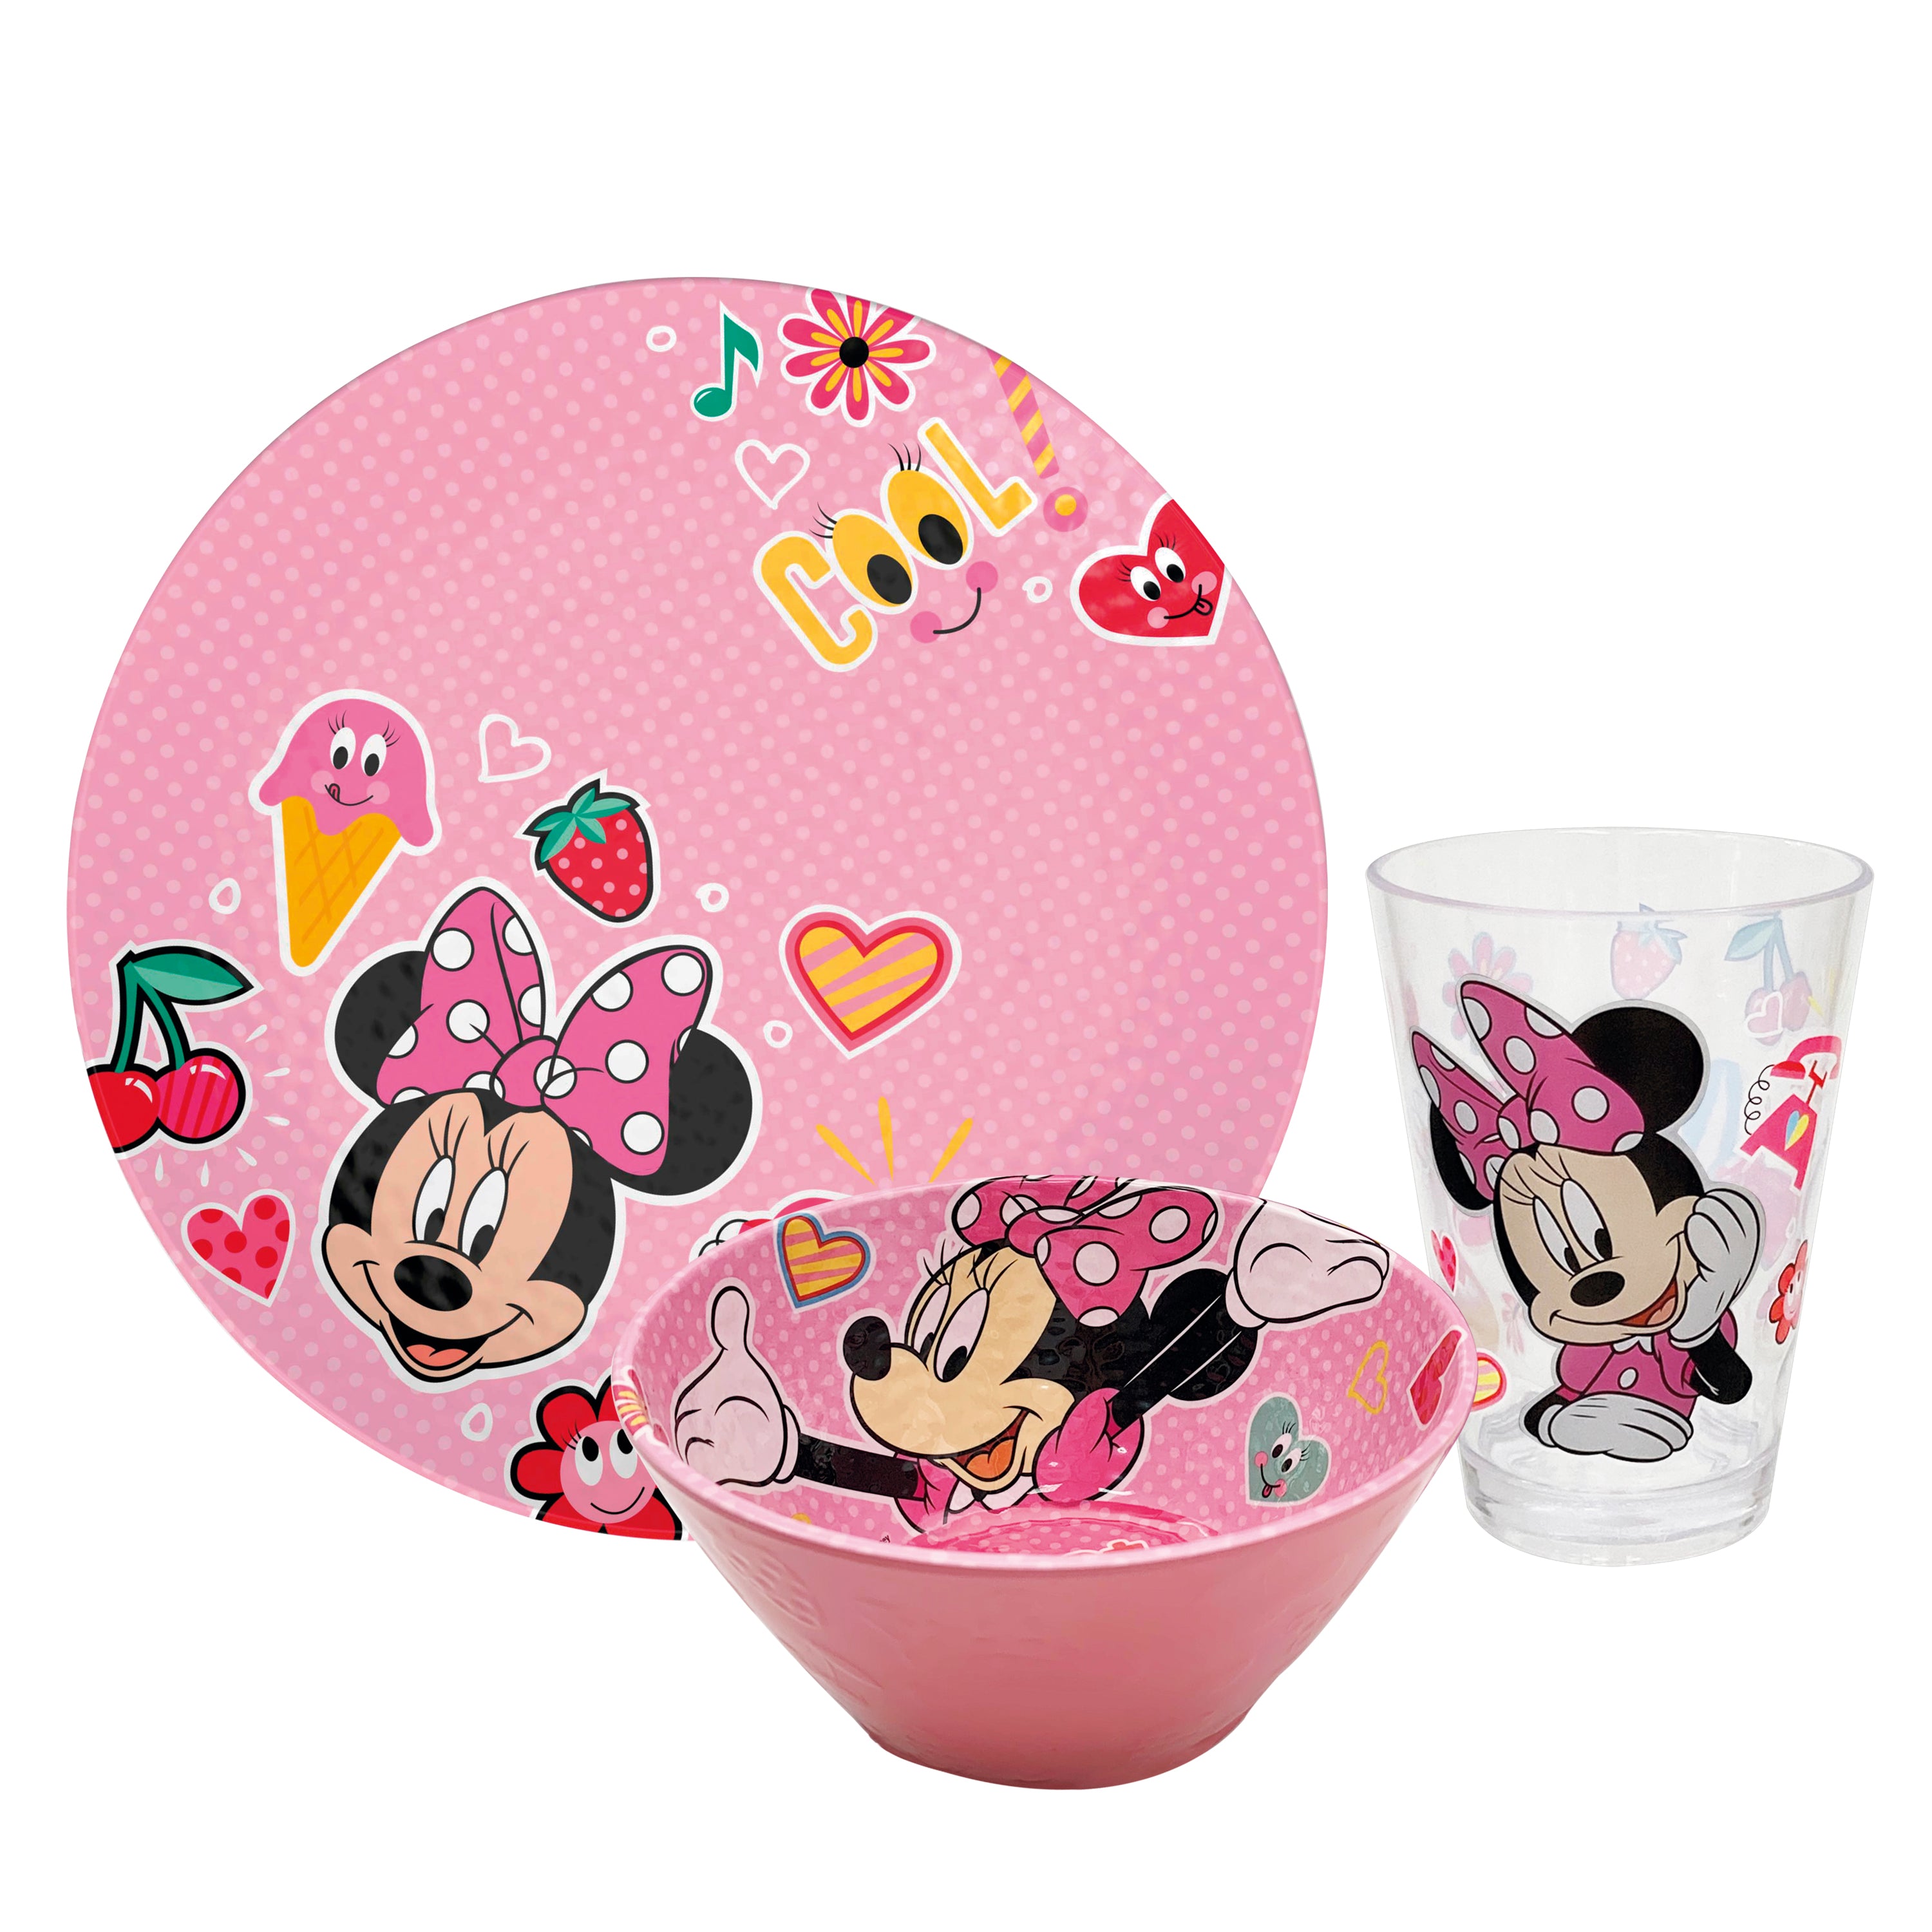 Zak Designs - Juego de vajilla infantil de Mickey Mouse de Disney incluye  plato, tazón, vaso y